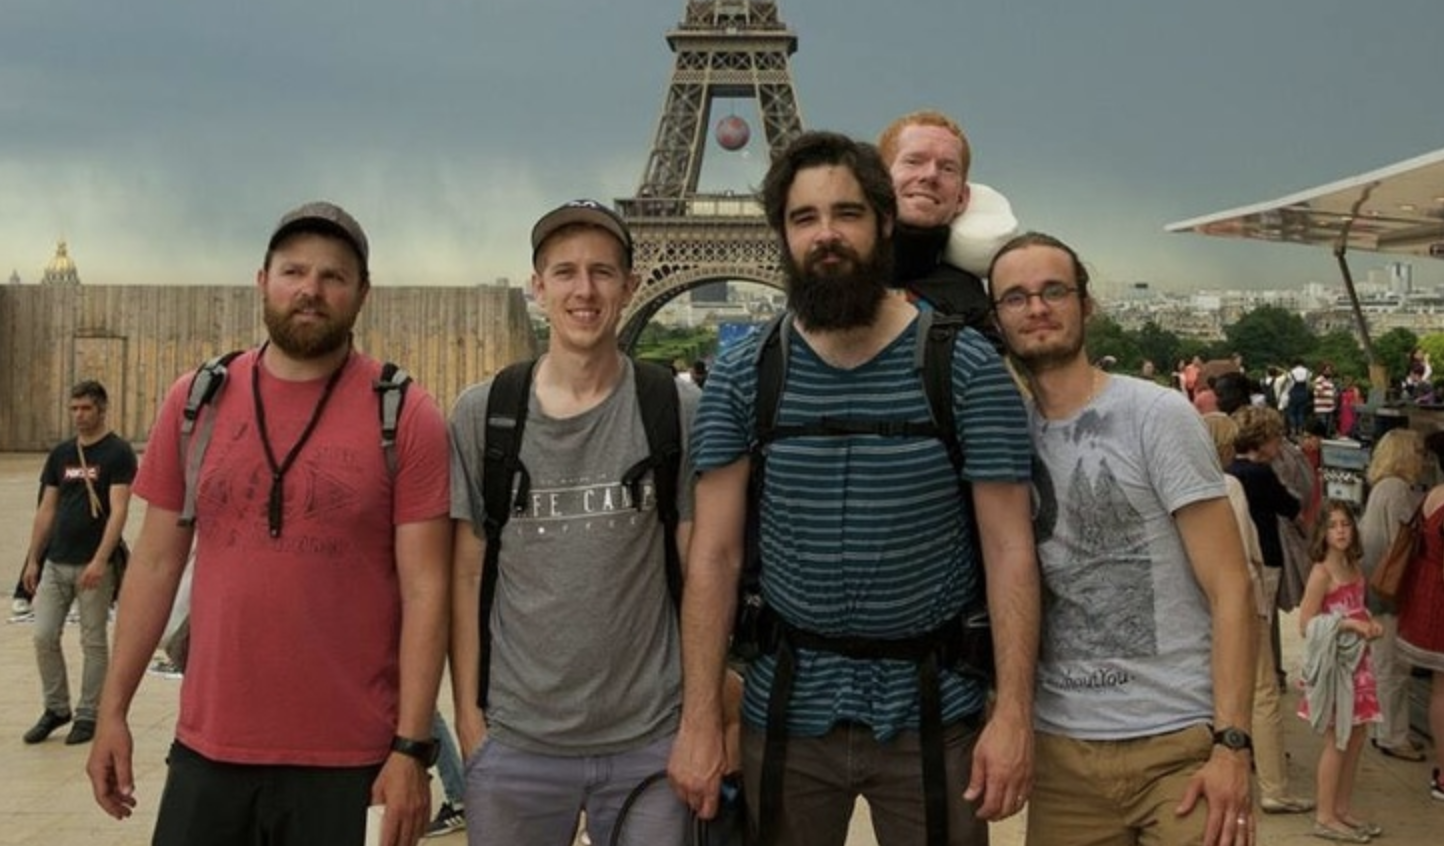 Fotografie priateľov pri Eiffelovej veži vyzerajú úplne bežné. Až kým sa nedozviete, aký príbeh sa za nimi skrýva